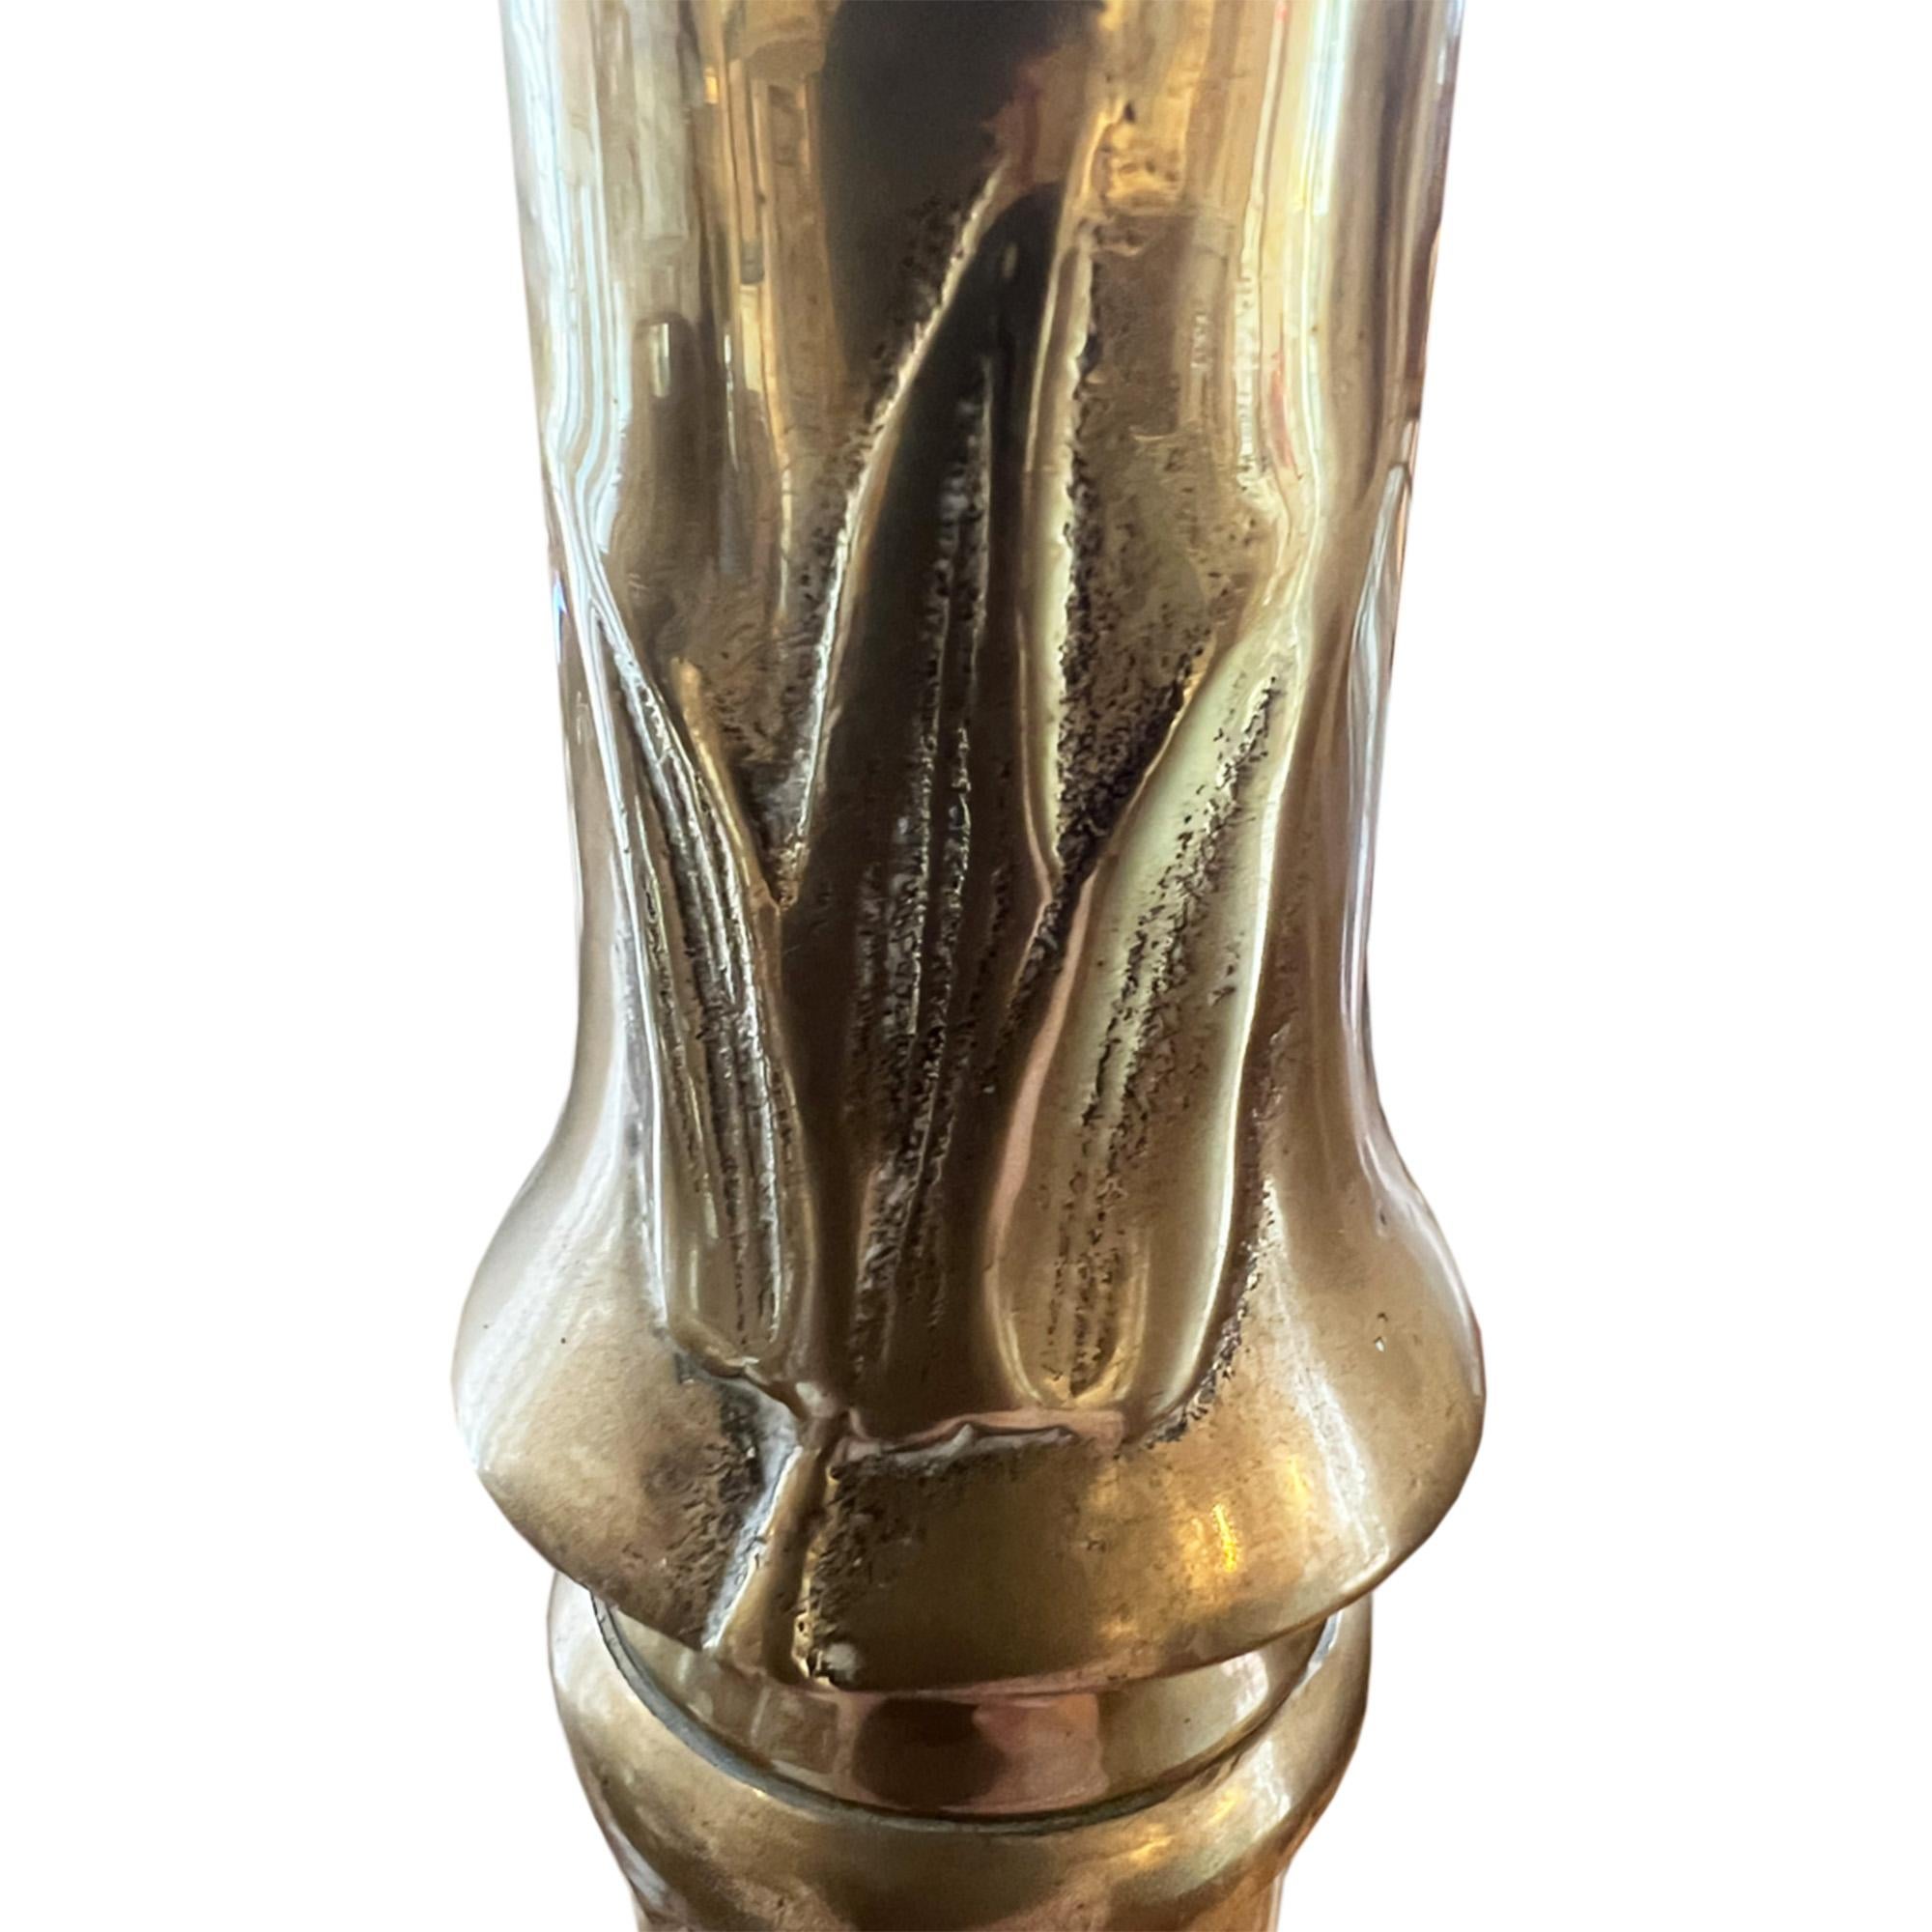 Dies ist eine tolle Stehlampe aus Messing aus der Mitte des Jahrhunderts.  die detailreiche Dekoration aus Bambusimitat, die bis zum Sockel reicht.

Er wird in Frankreich hergestellt und ist nicht nur elegant, sondern auch solide und robust. 

Wir